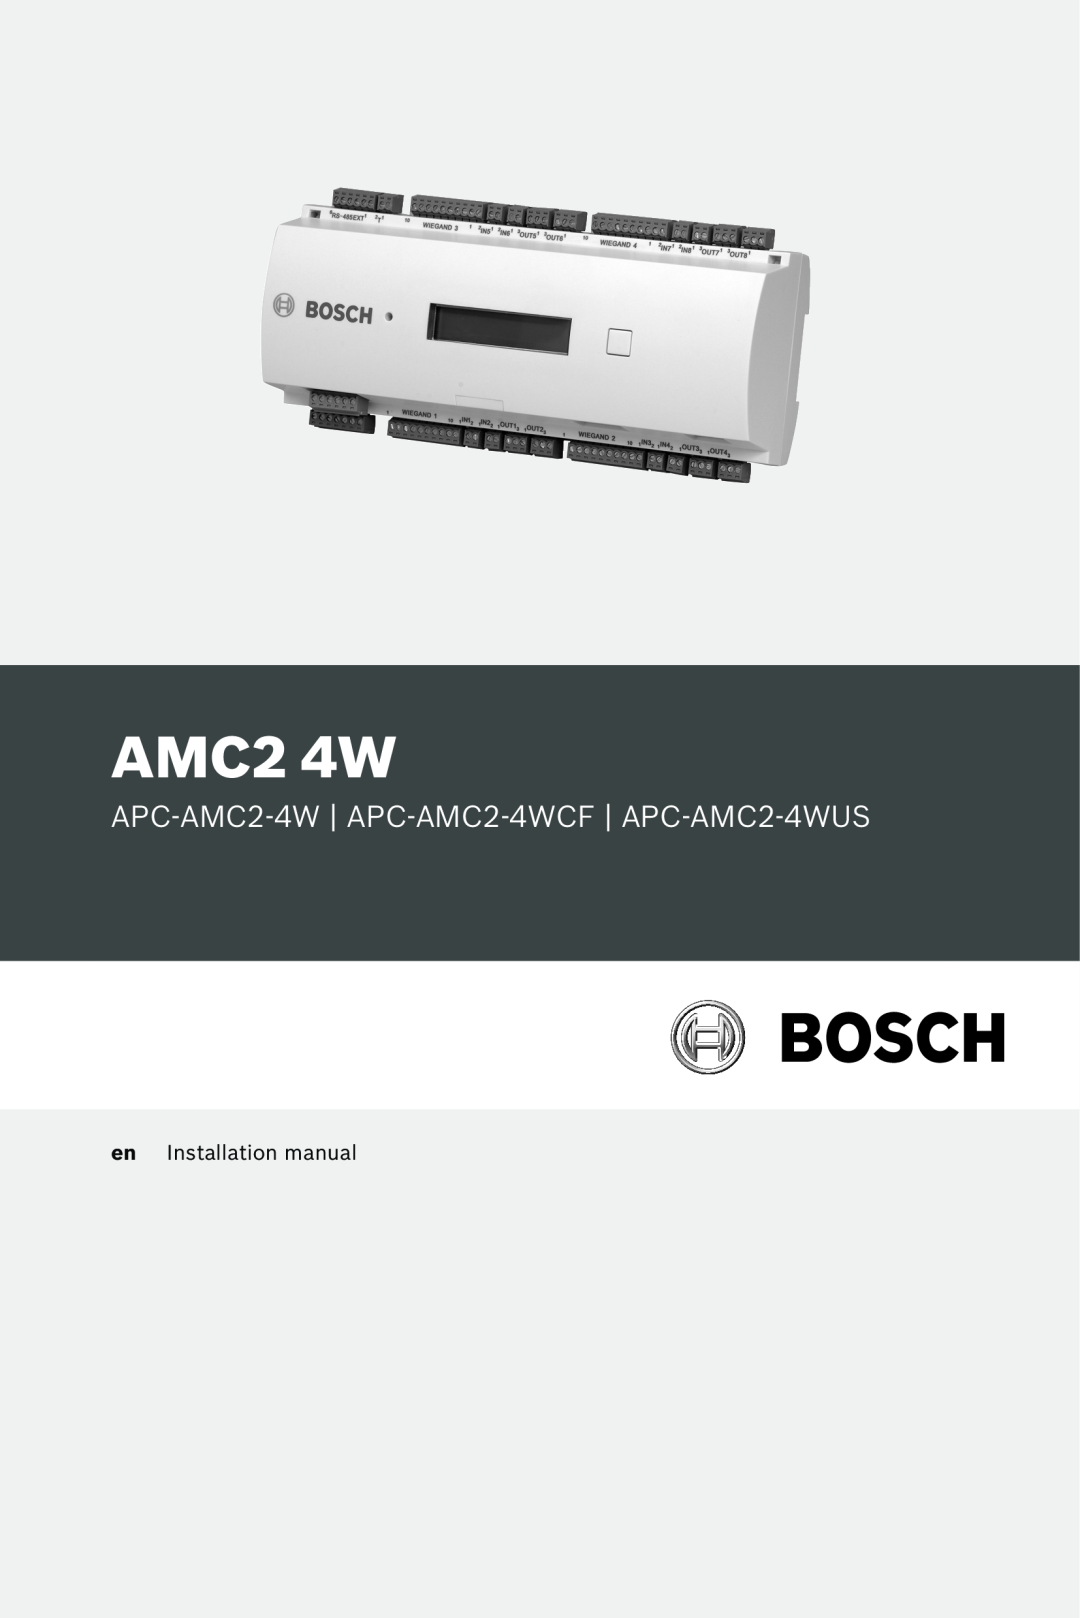 Bosch Appliances installation manual AMC2 4W, APC-AMC2-4W APC-AMC2-4WCF APC-AMC2-4WUS, en Installation manual 